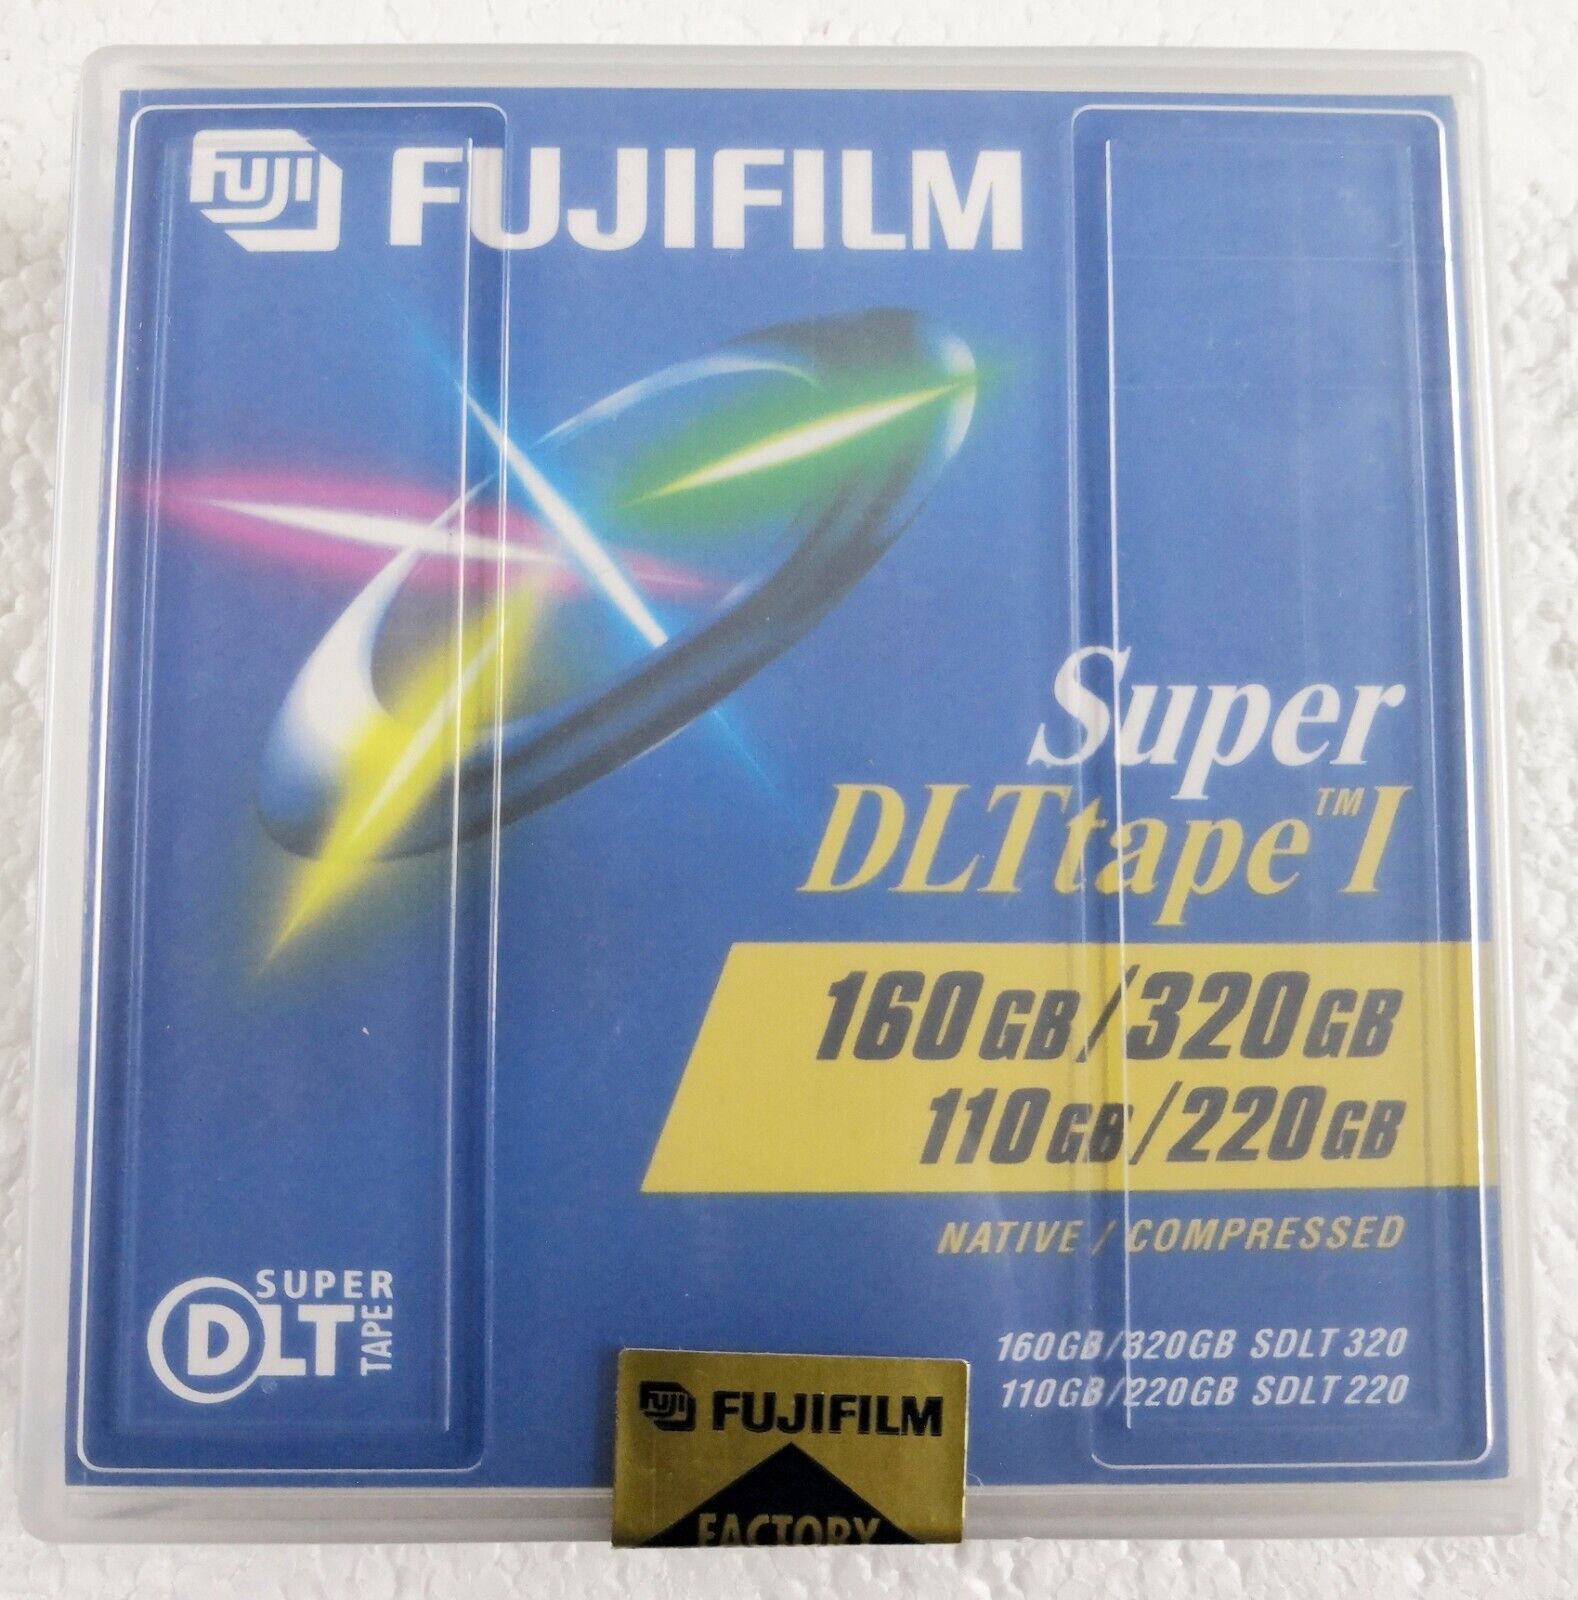 Fujifilm Super DLTtape I Tape Cartridge - 160 GB / 320 GB